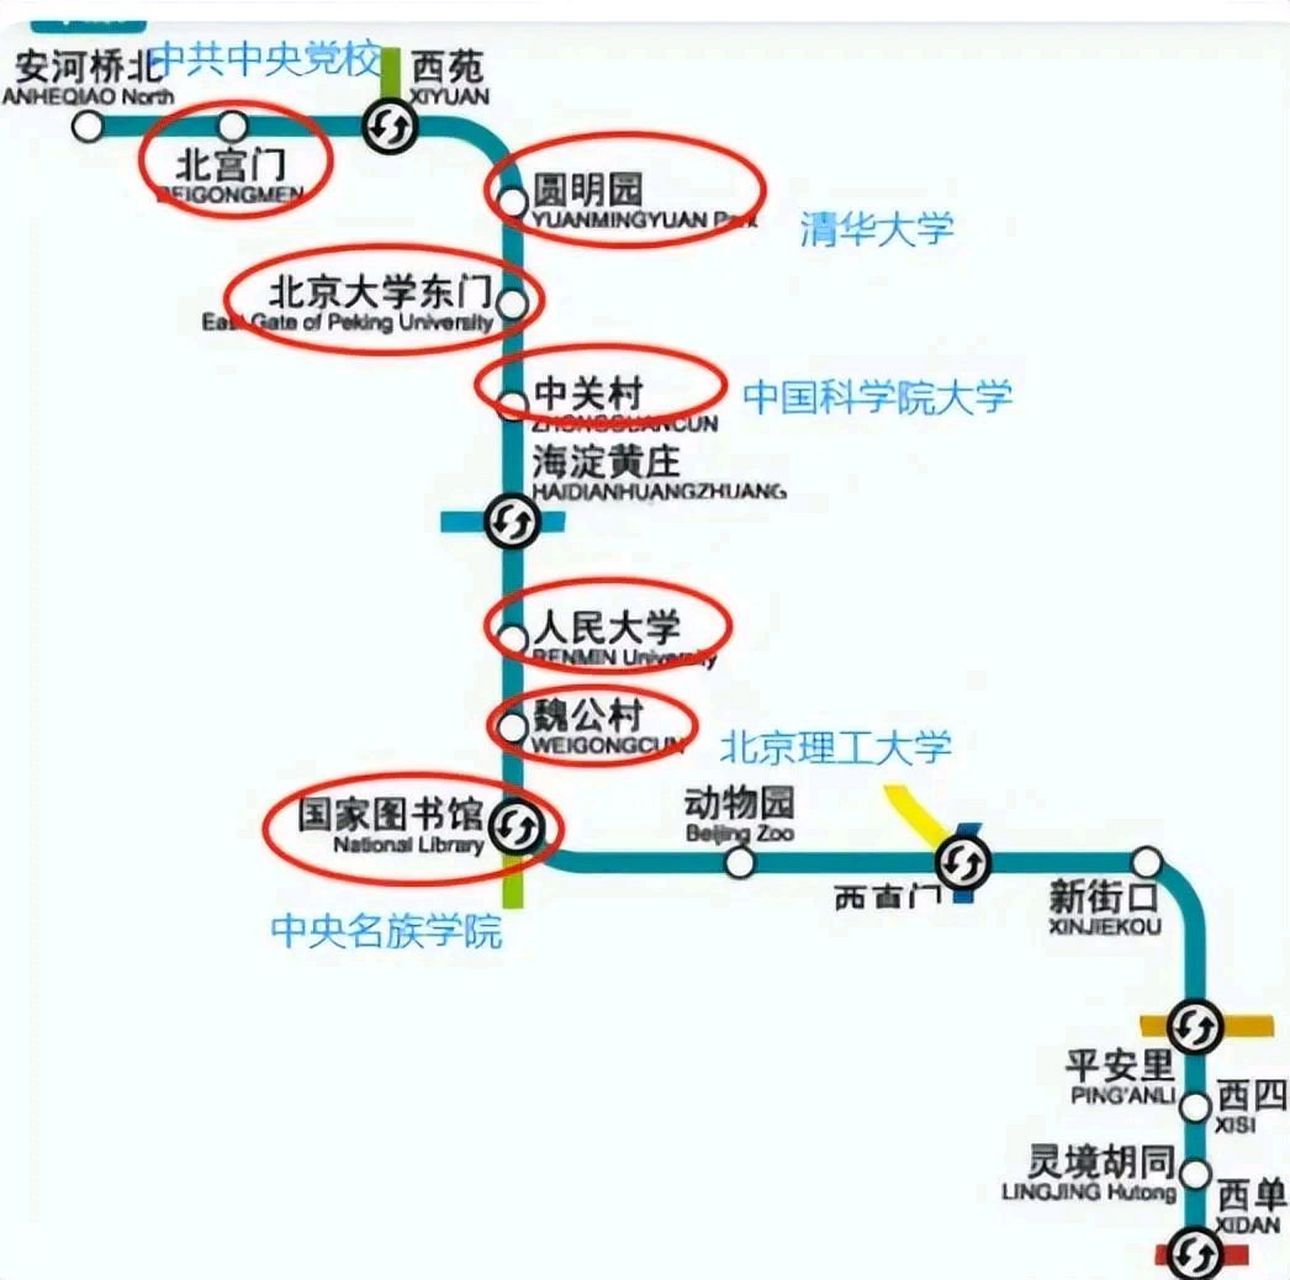 北京地铁四号线,谁先下车谁尴尬,但是谁也不敢瞧不起最后一个下车的